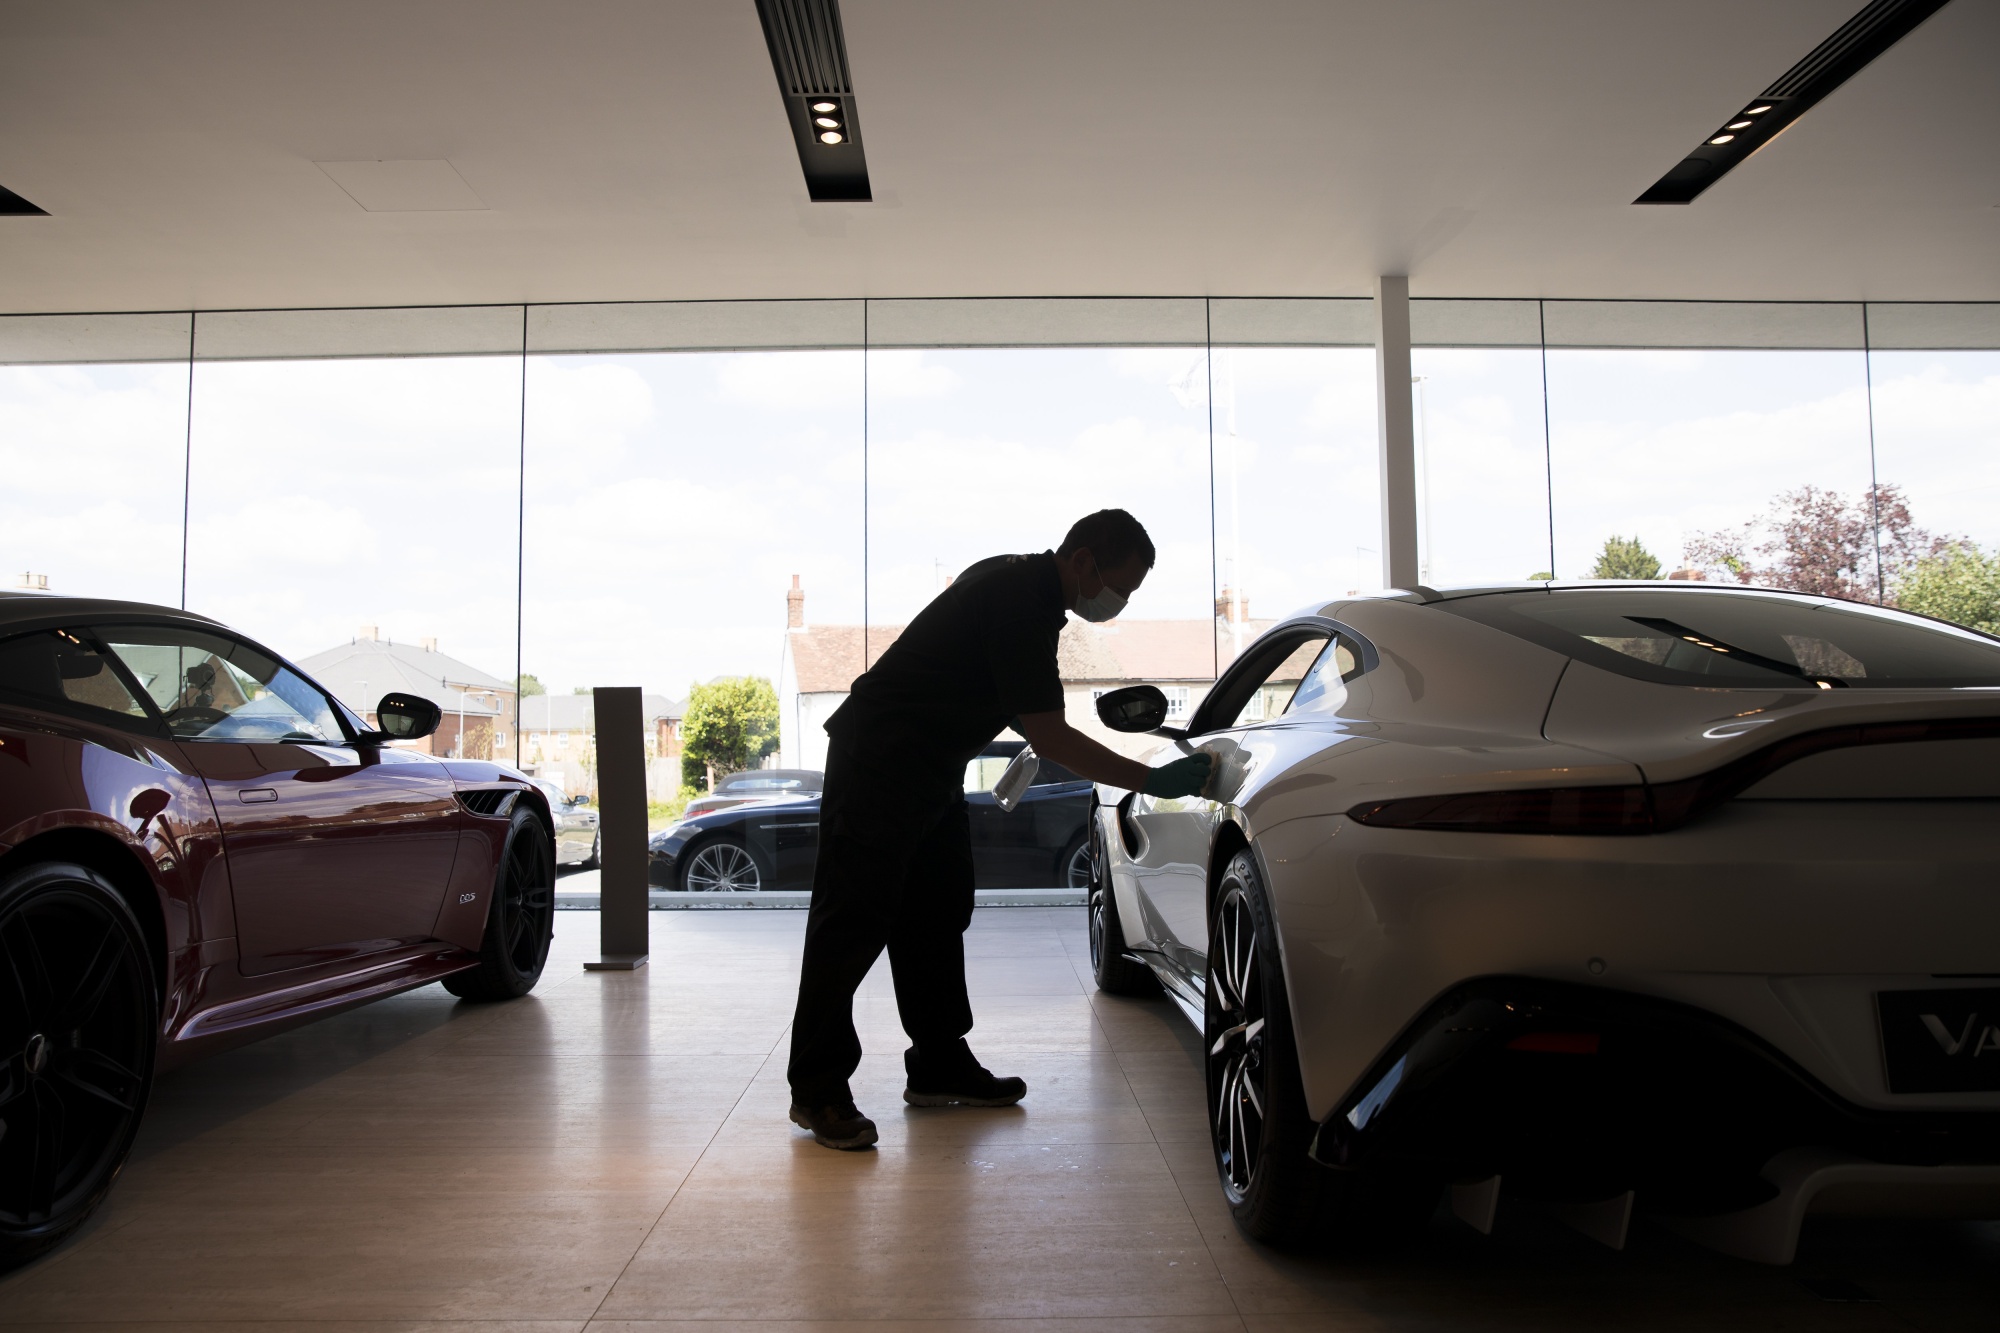 Virus Lockdown Easing Sees Aston Martin Works Dealership Reopen